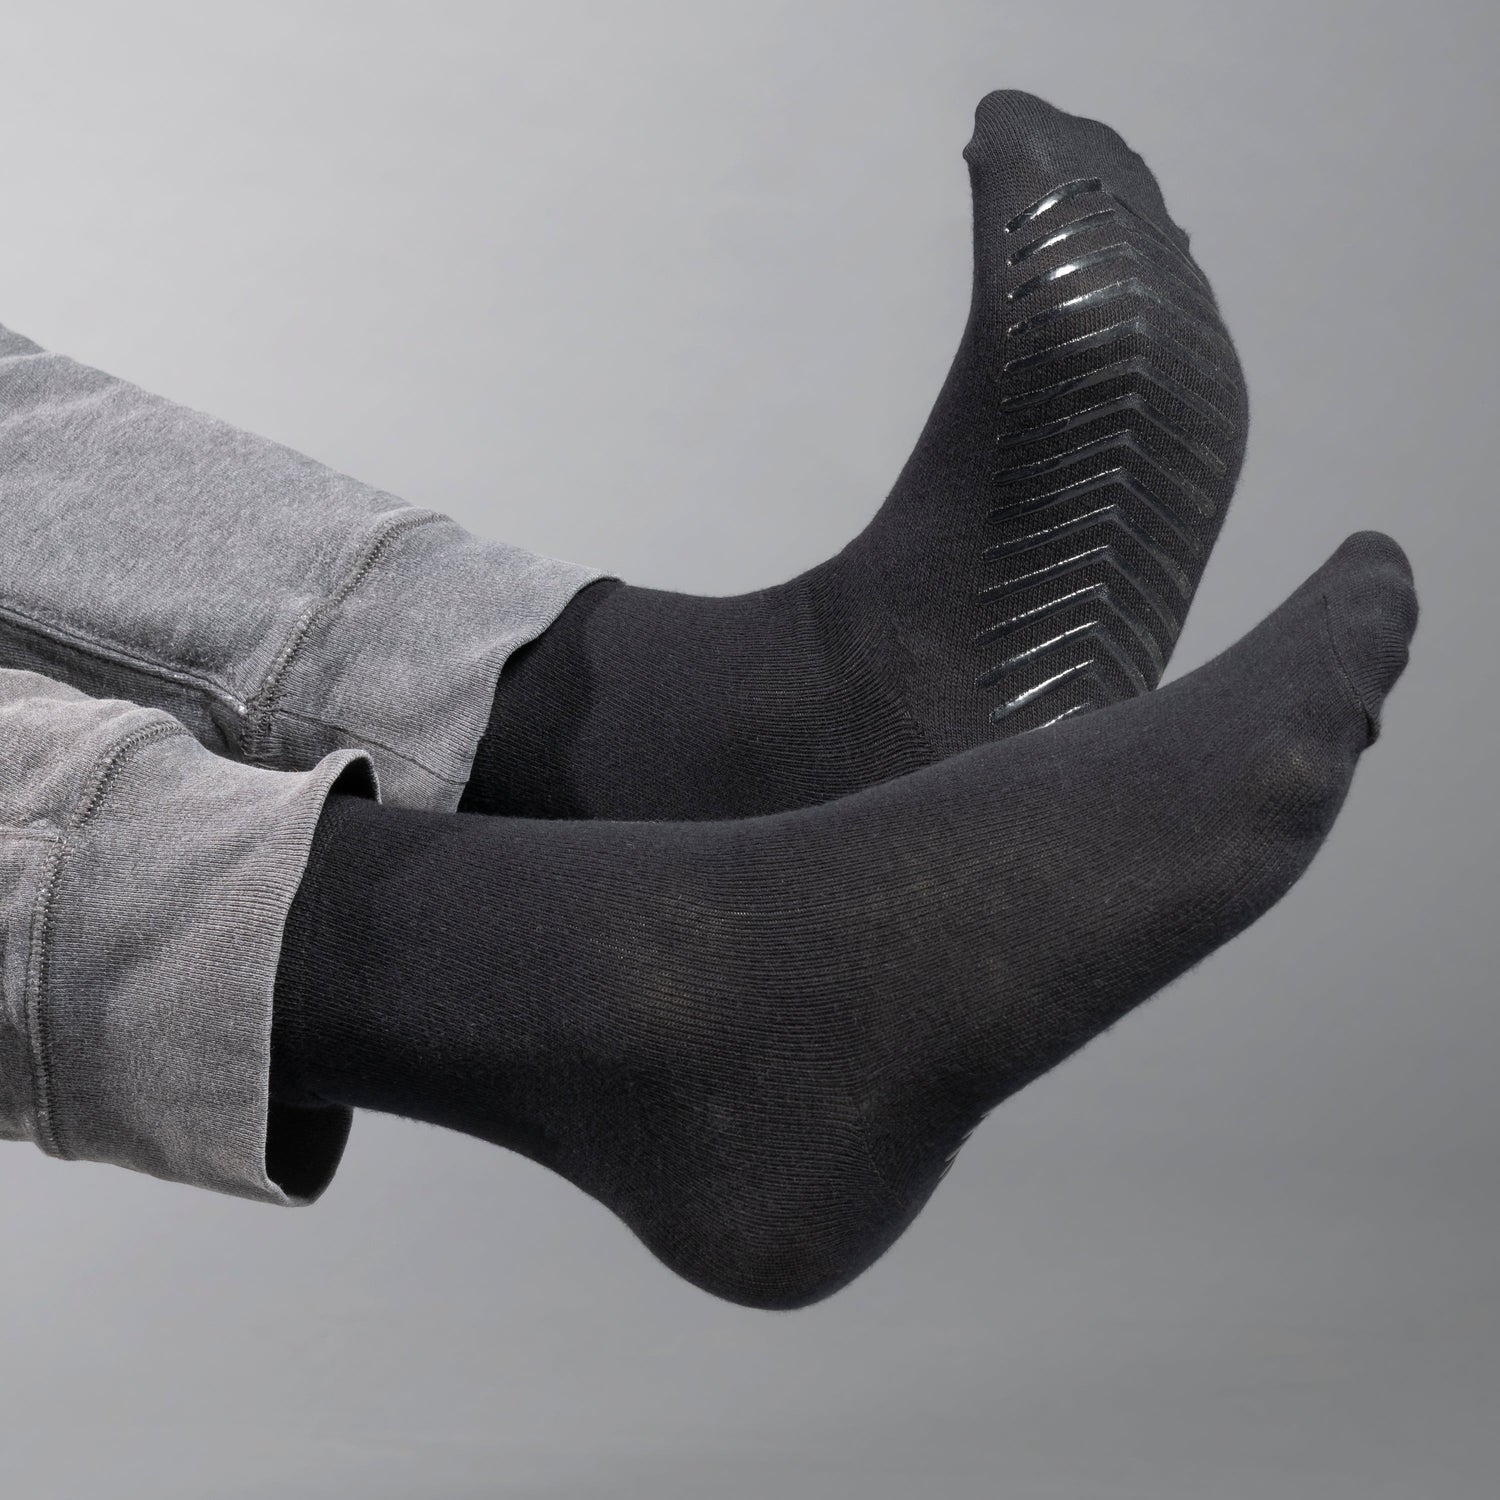 Men's Tube Socks Adaptive Clothing for Seniors, Disabled & Elderly Care